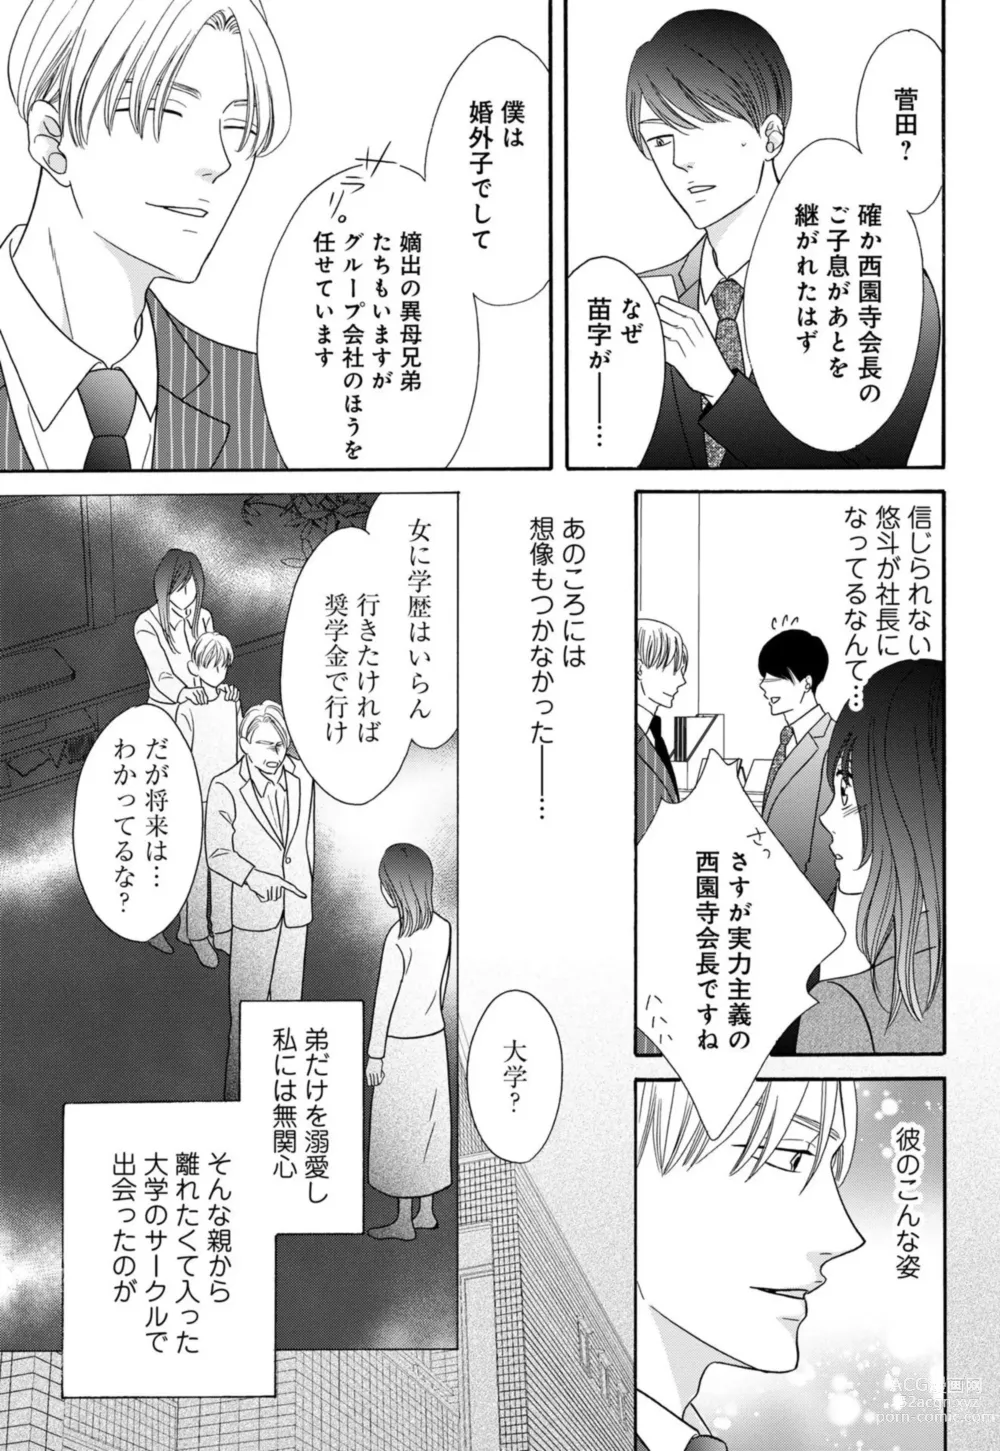 Page 9 of manga `Netotte Yaru yo Moto Kare Kara 8 Toshikoshi no Shūchaku ai 1